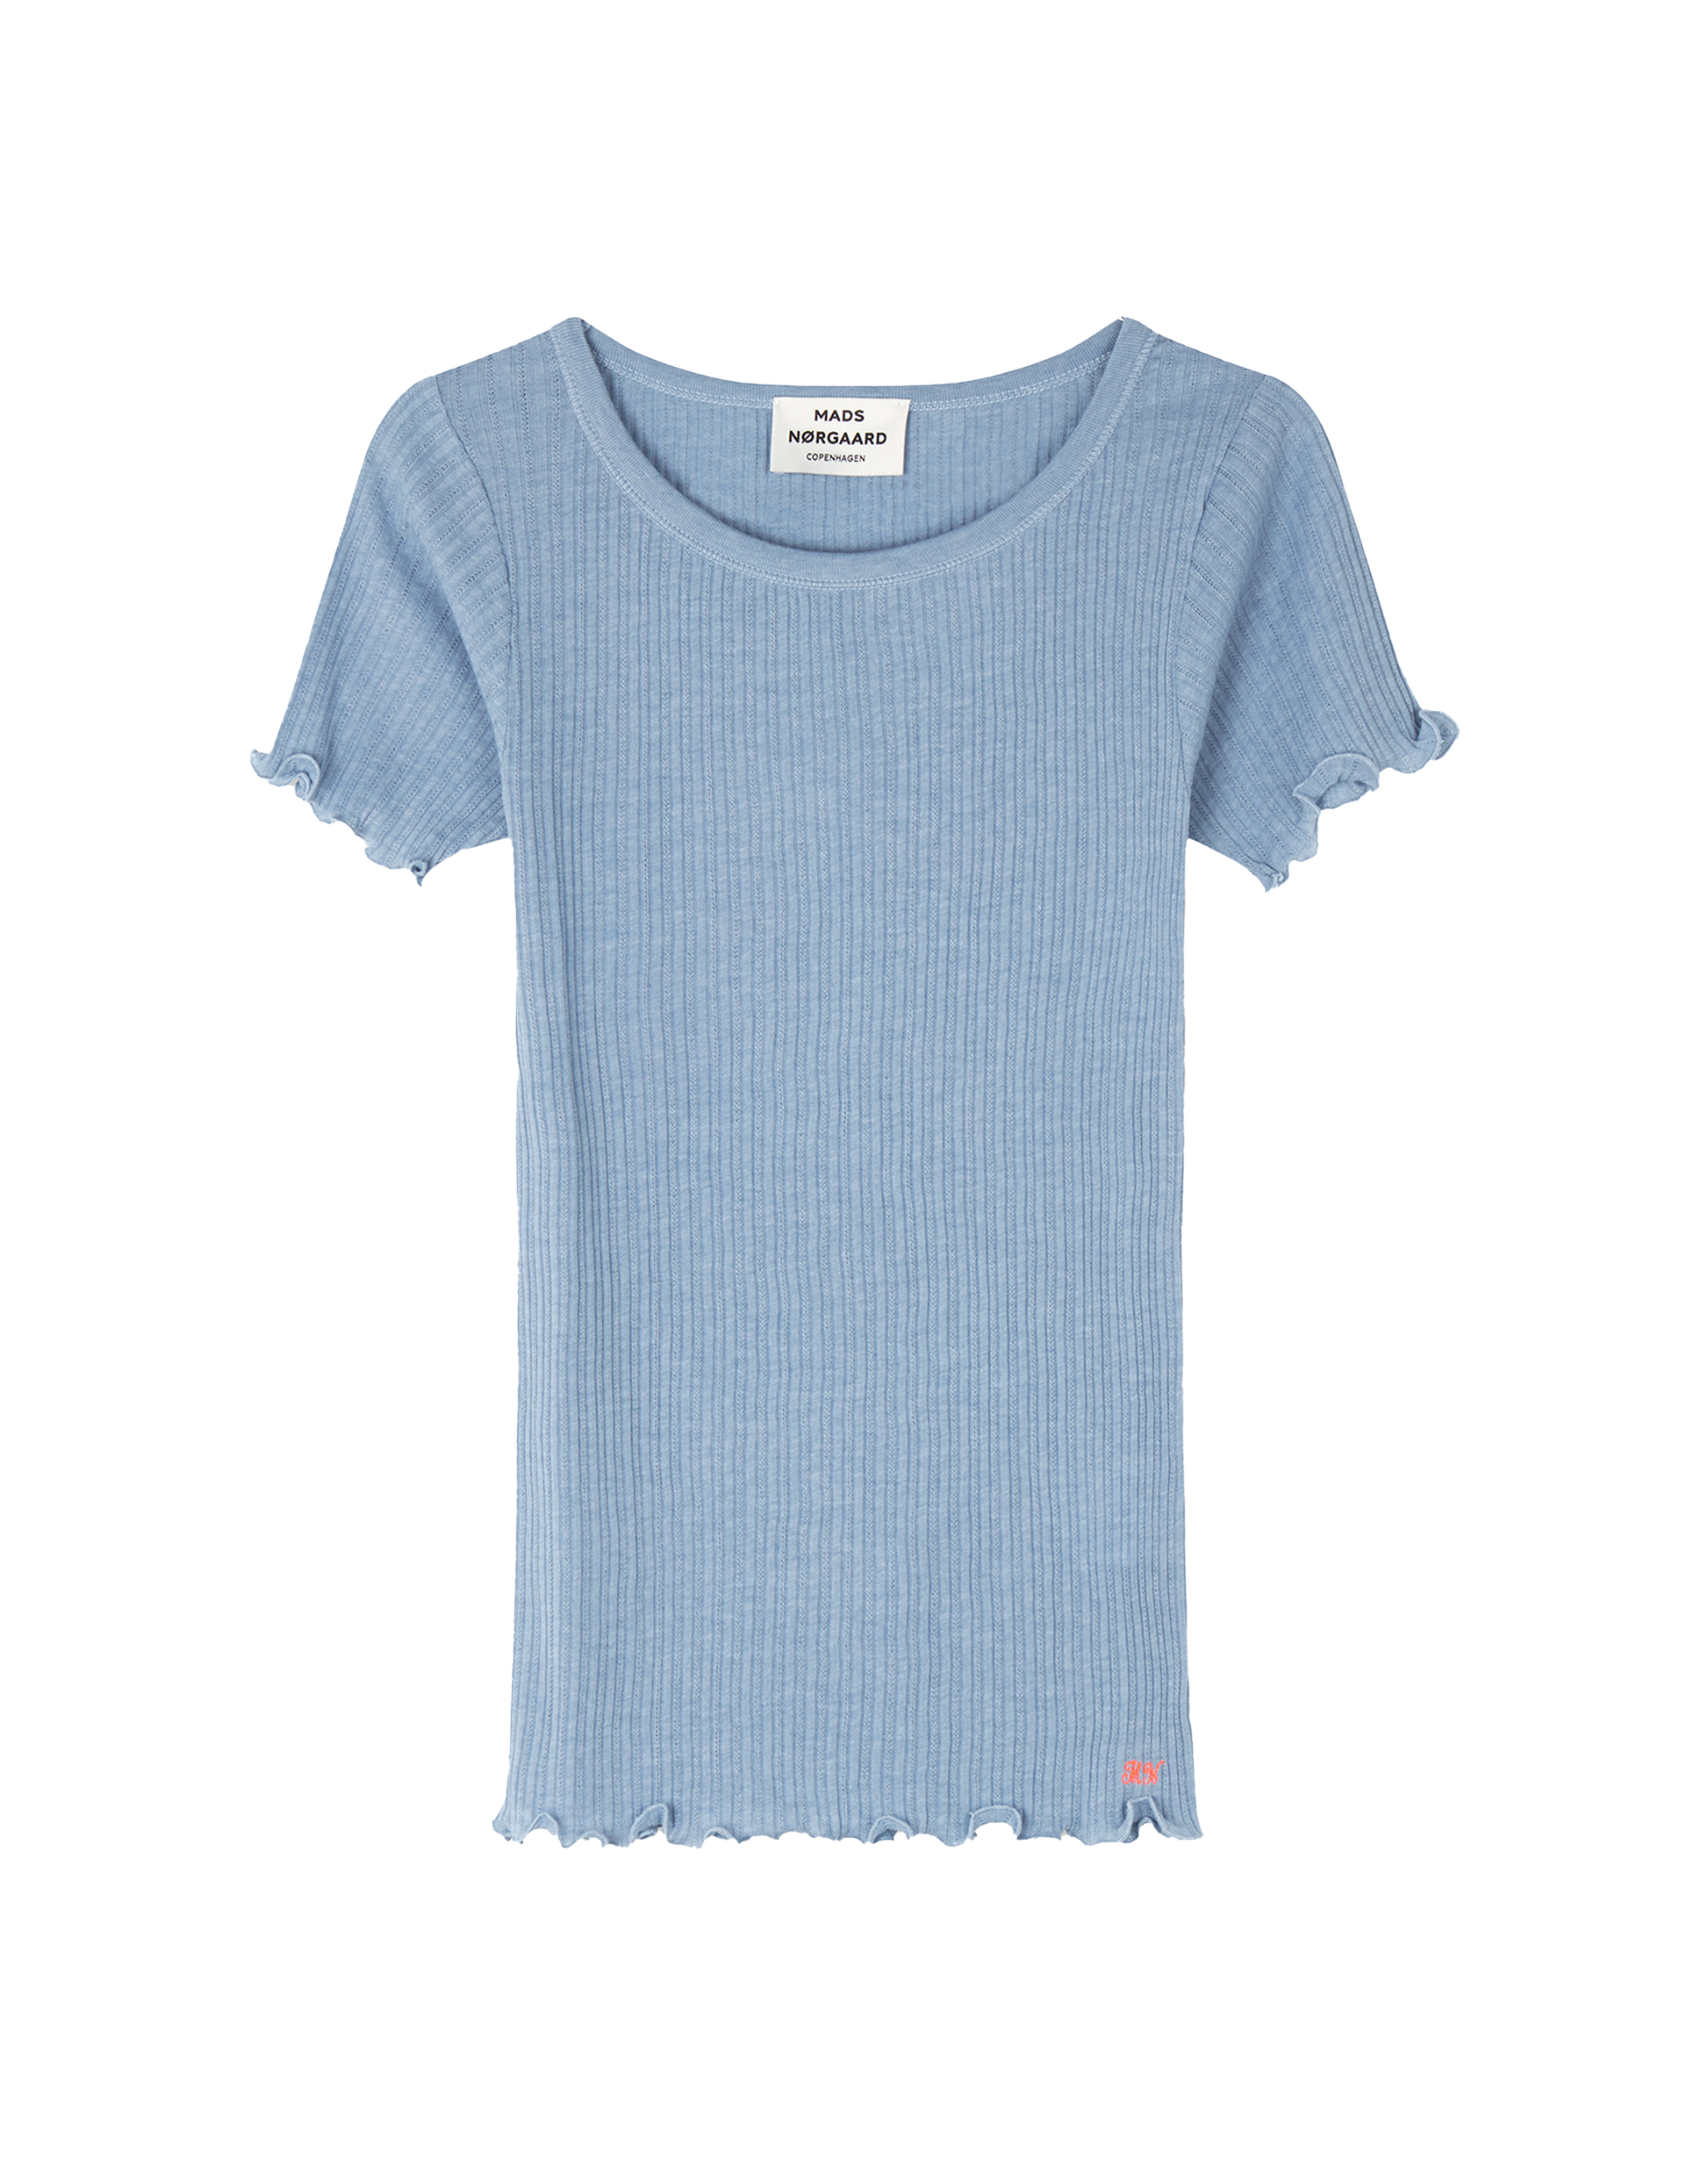 Mads Norgaard Pointella Troja T-Shirt in Powder Blue Melange